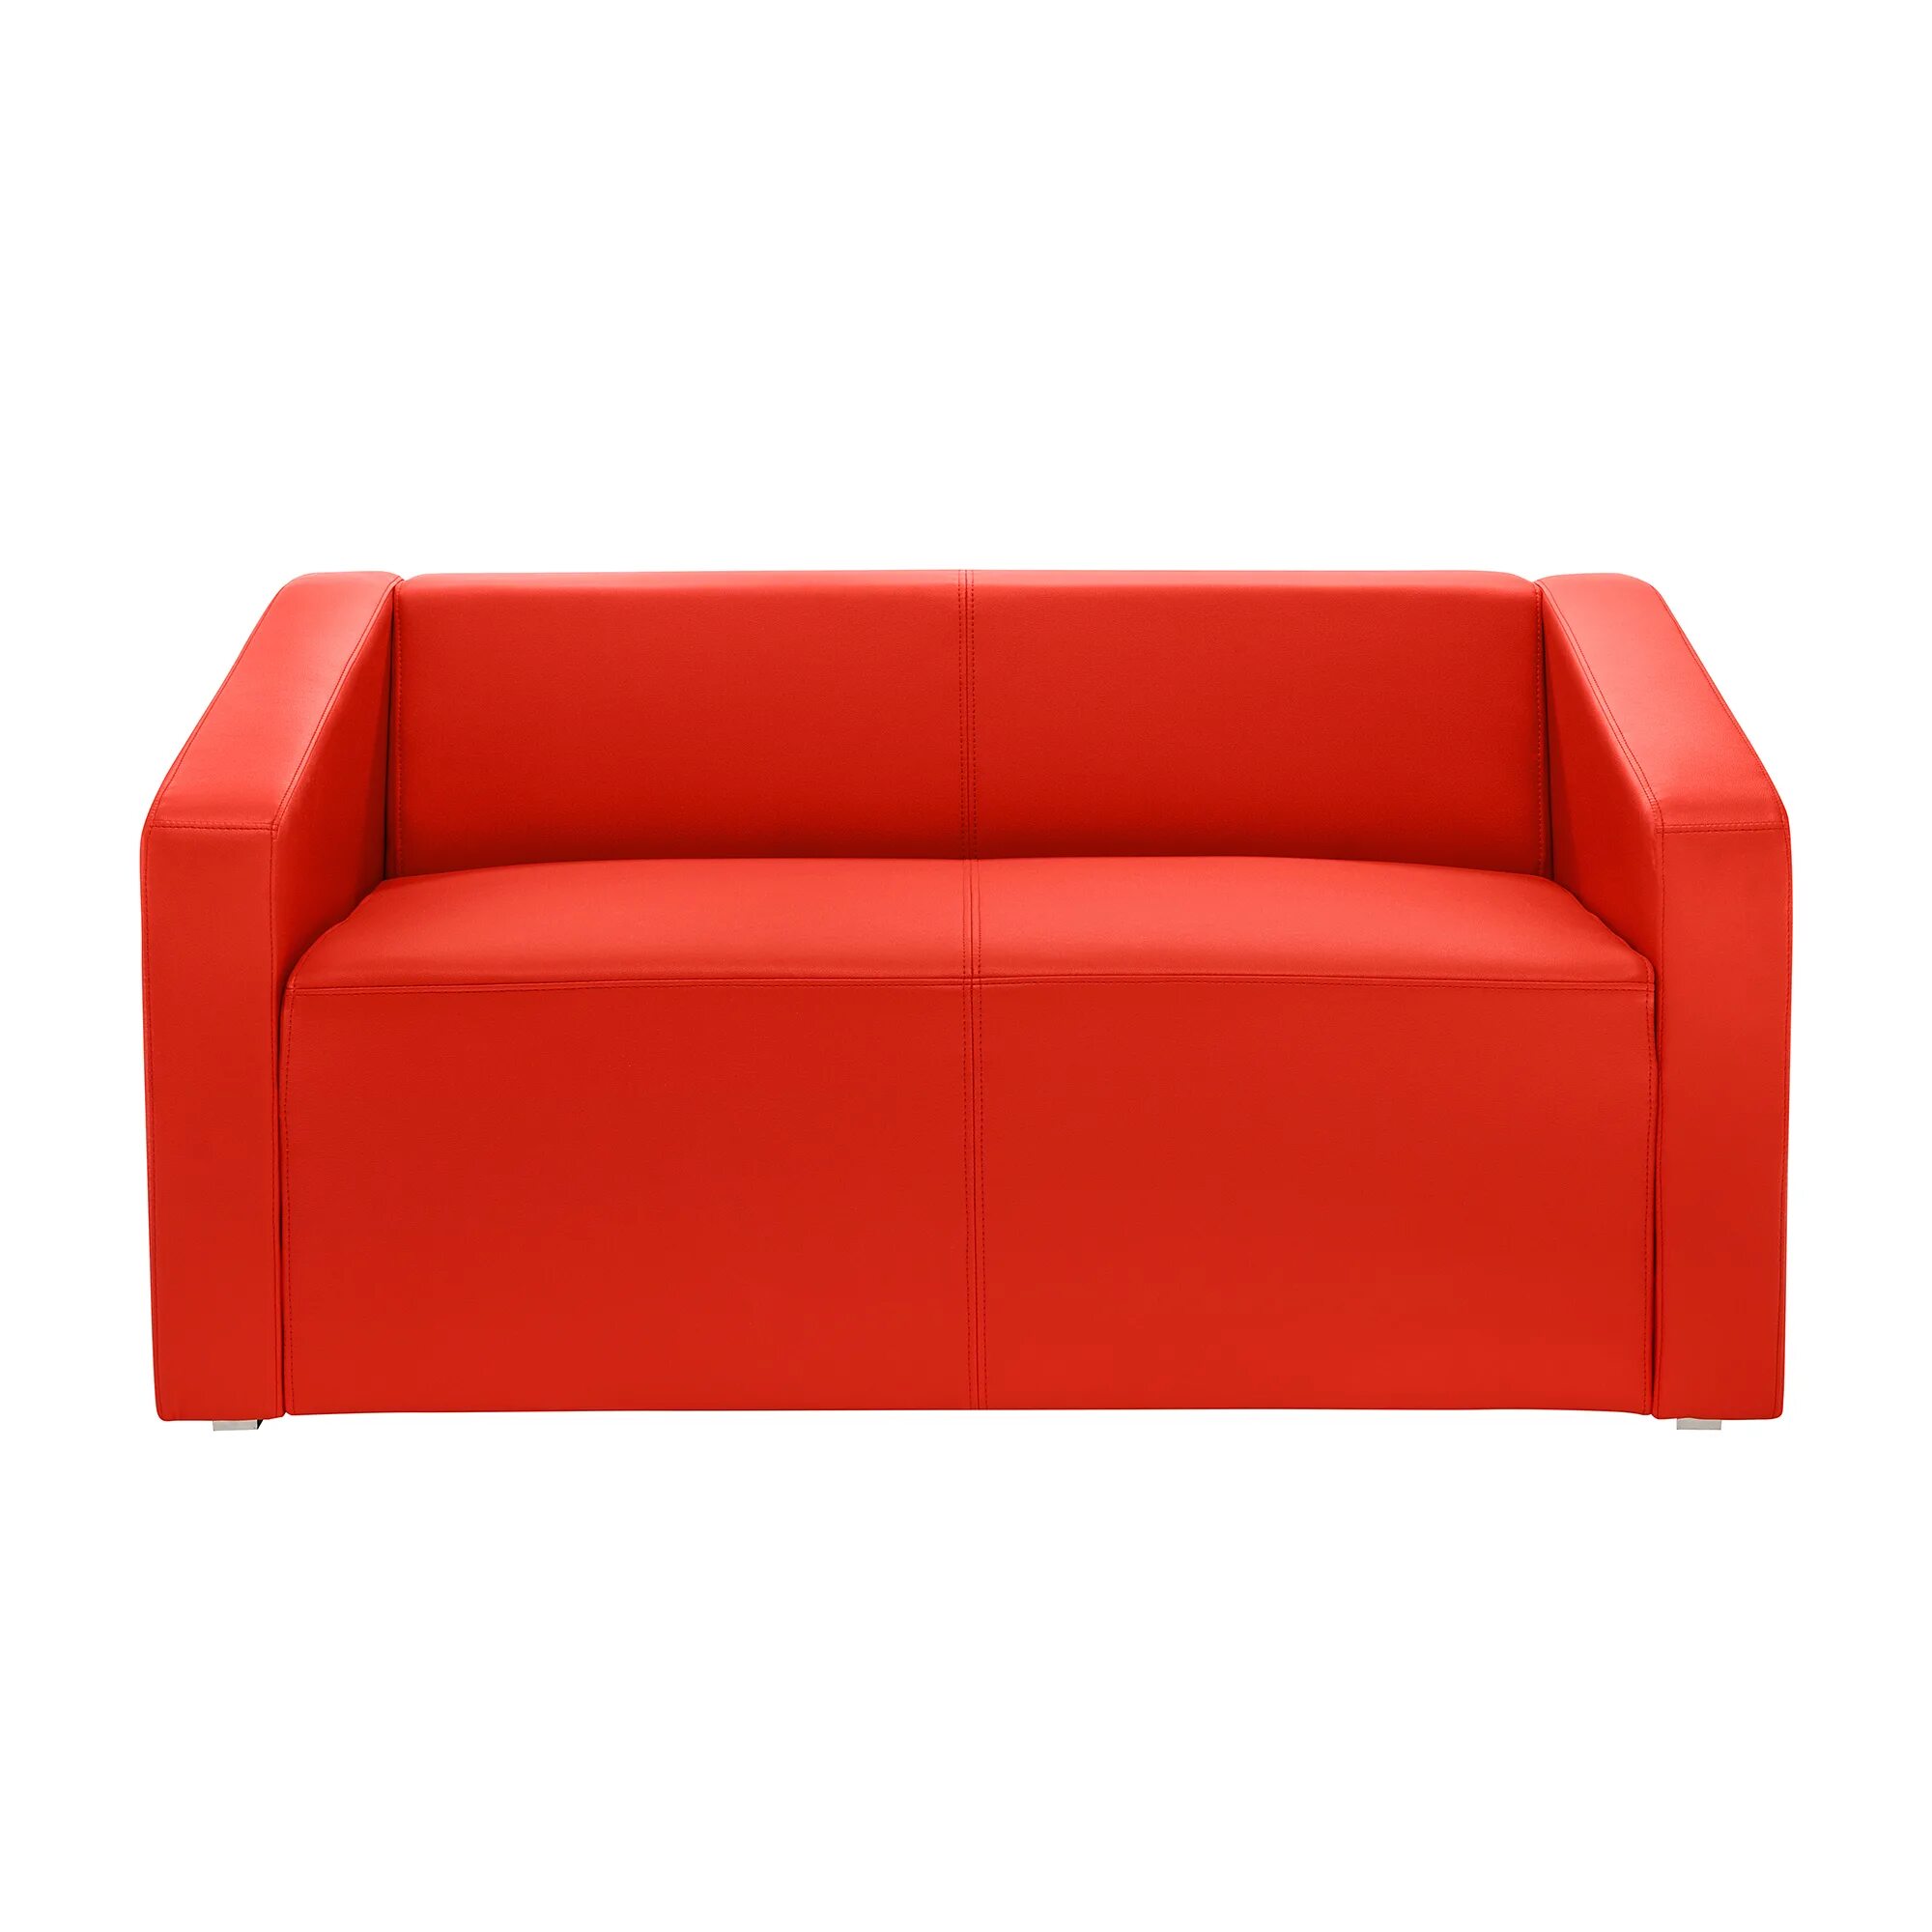 Диван икеа Solsta. Диван ikea сольста. Красный диван икеа. Красный металлический диван икеа. Диван двухместный москва